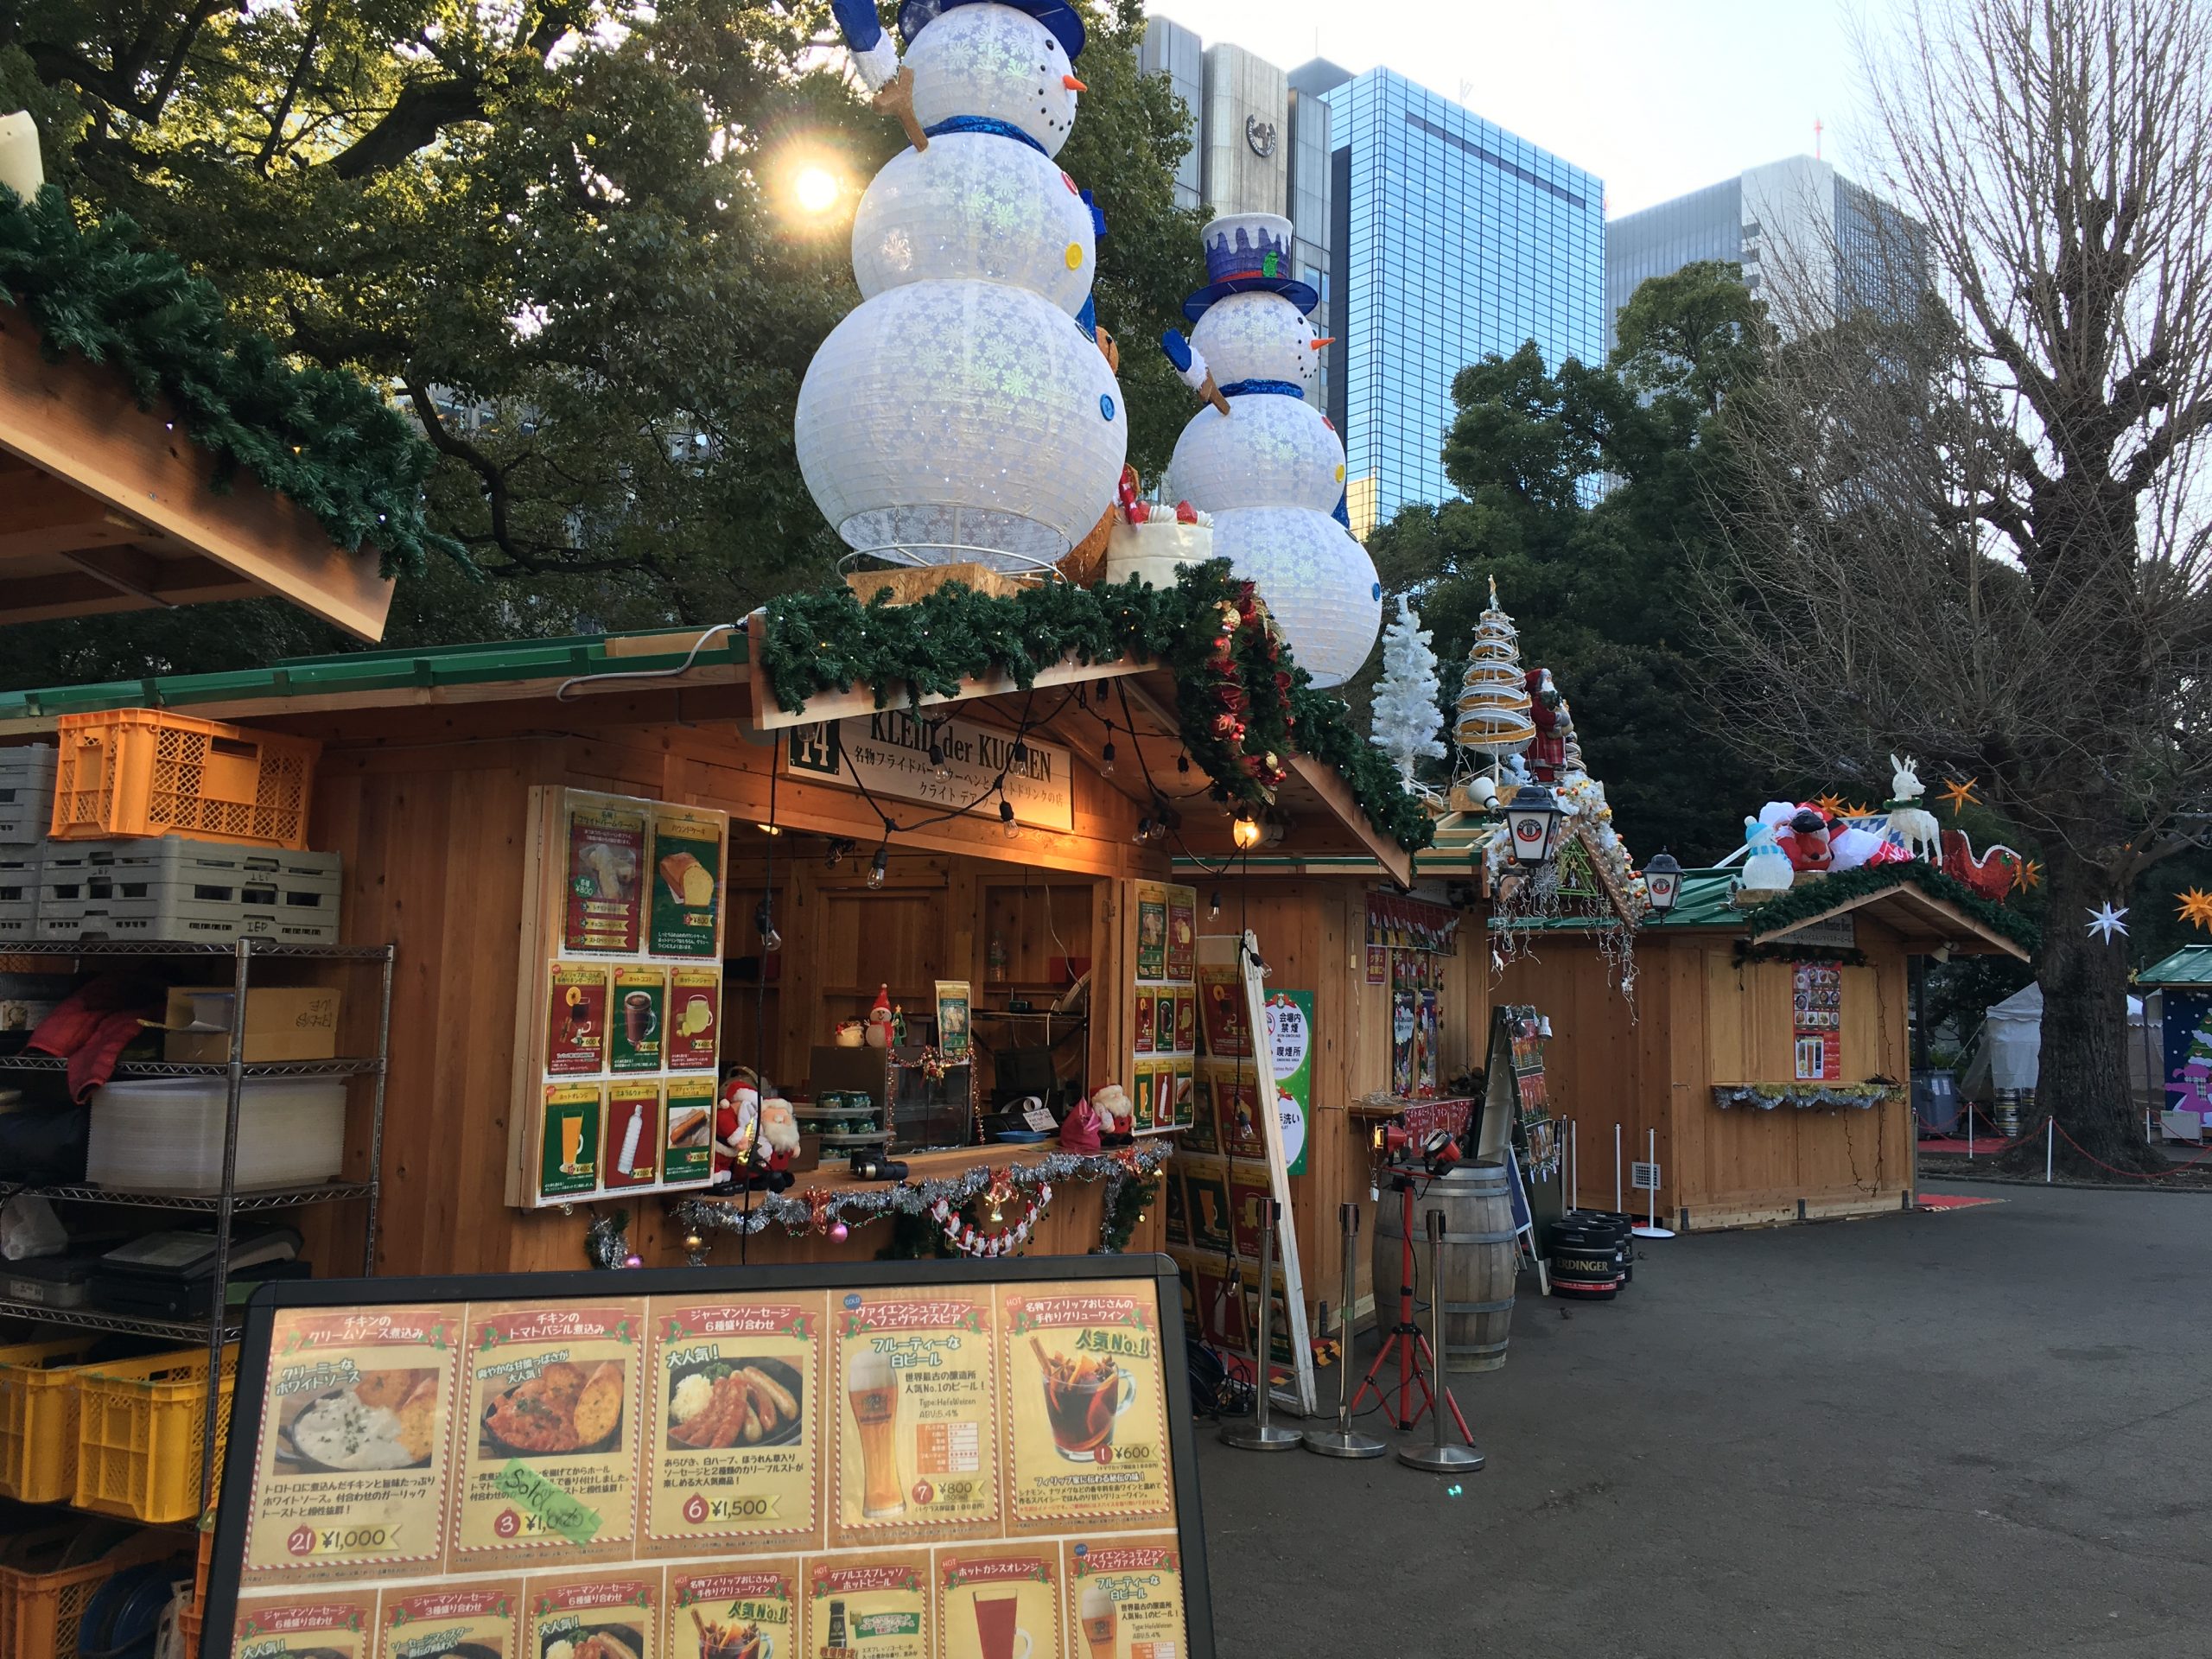 東京クリスマスマーケット2016